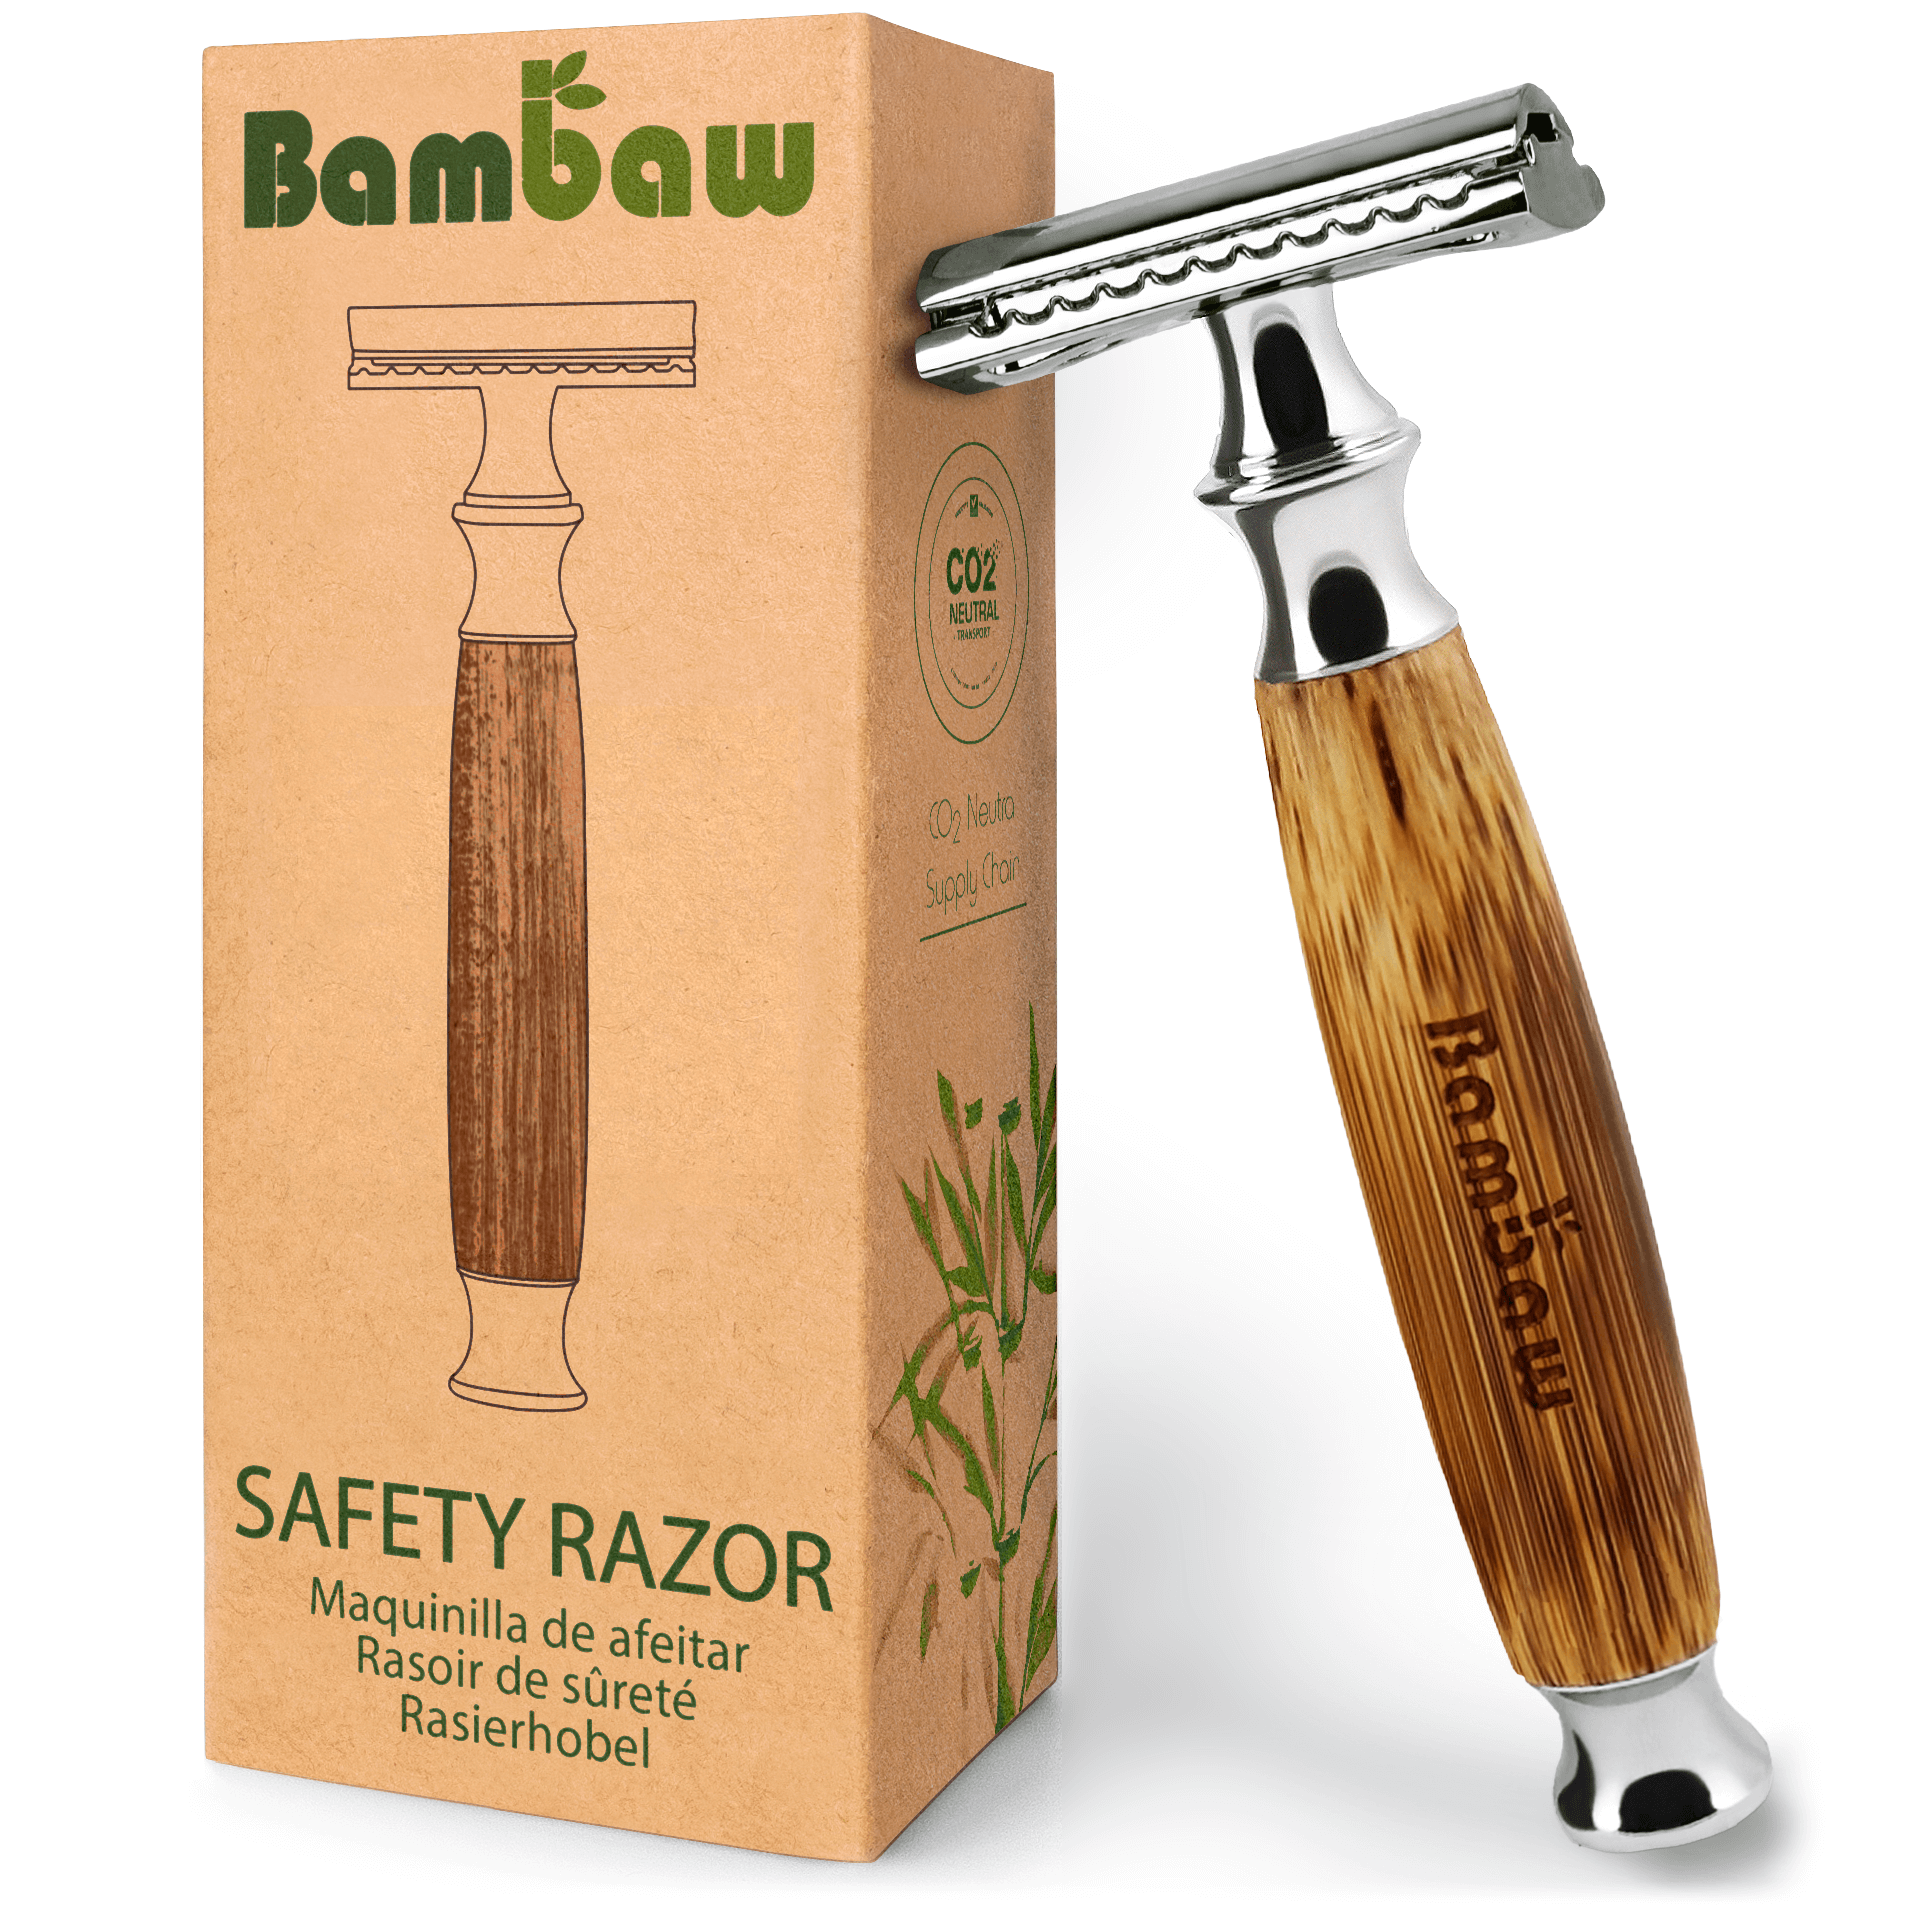 Tøm skraldespanden Bedrag ting Safety razor fra Bambaw - Køb den her for kun 199,- Kr.